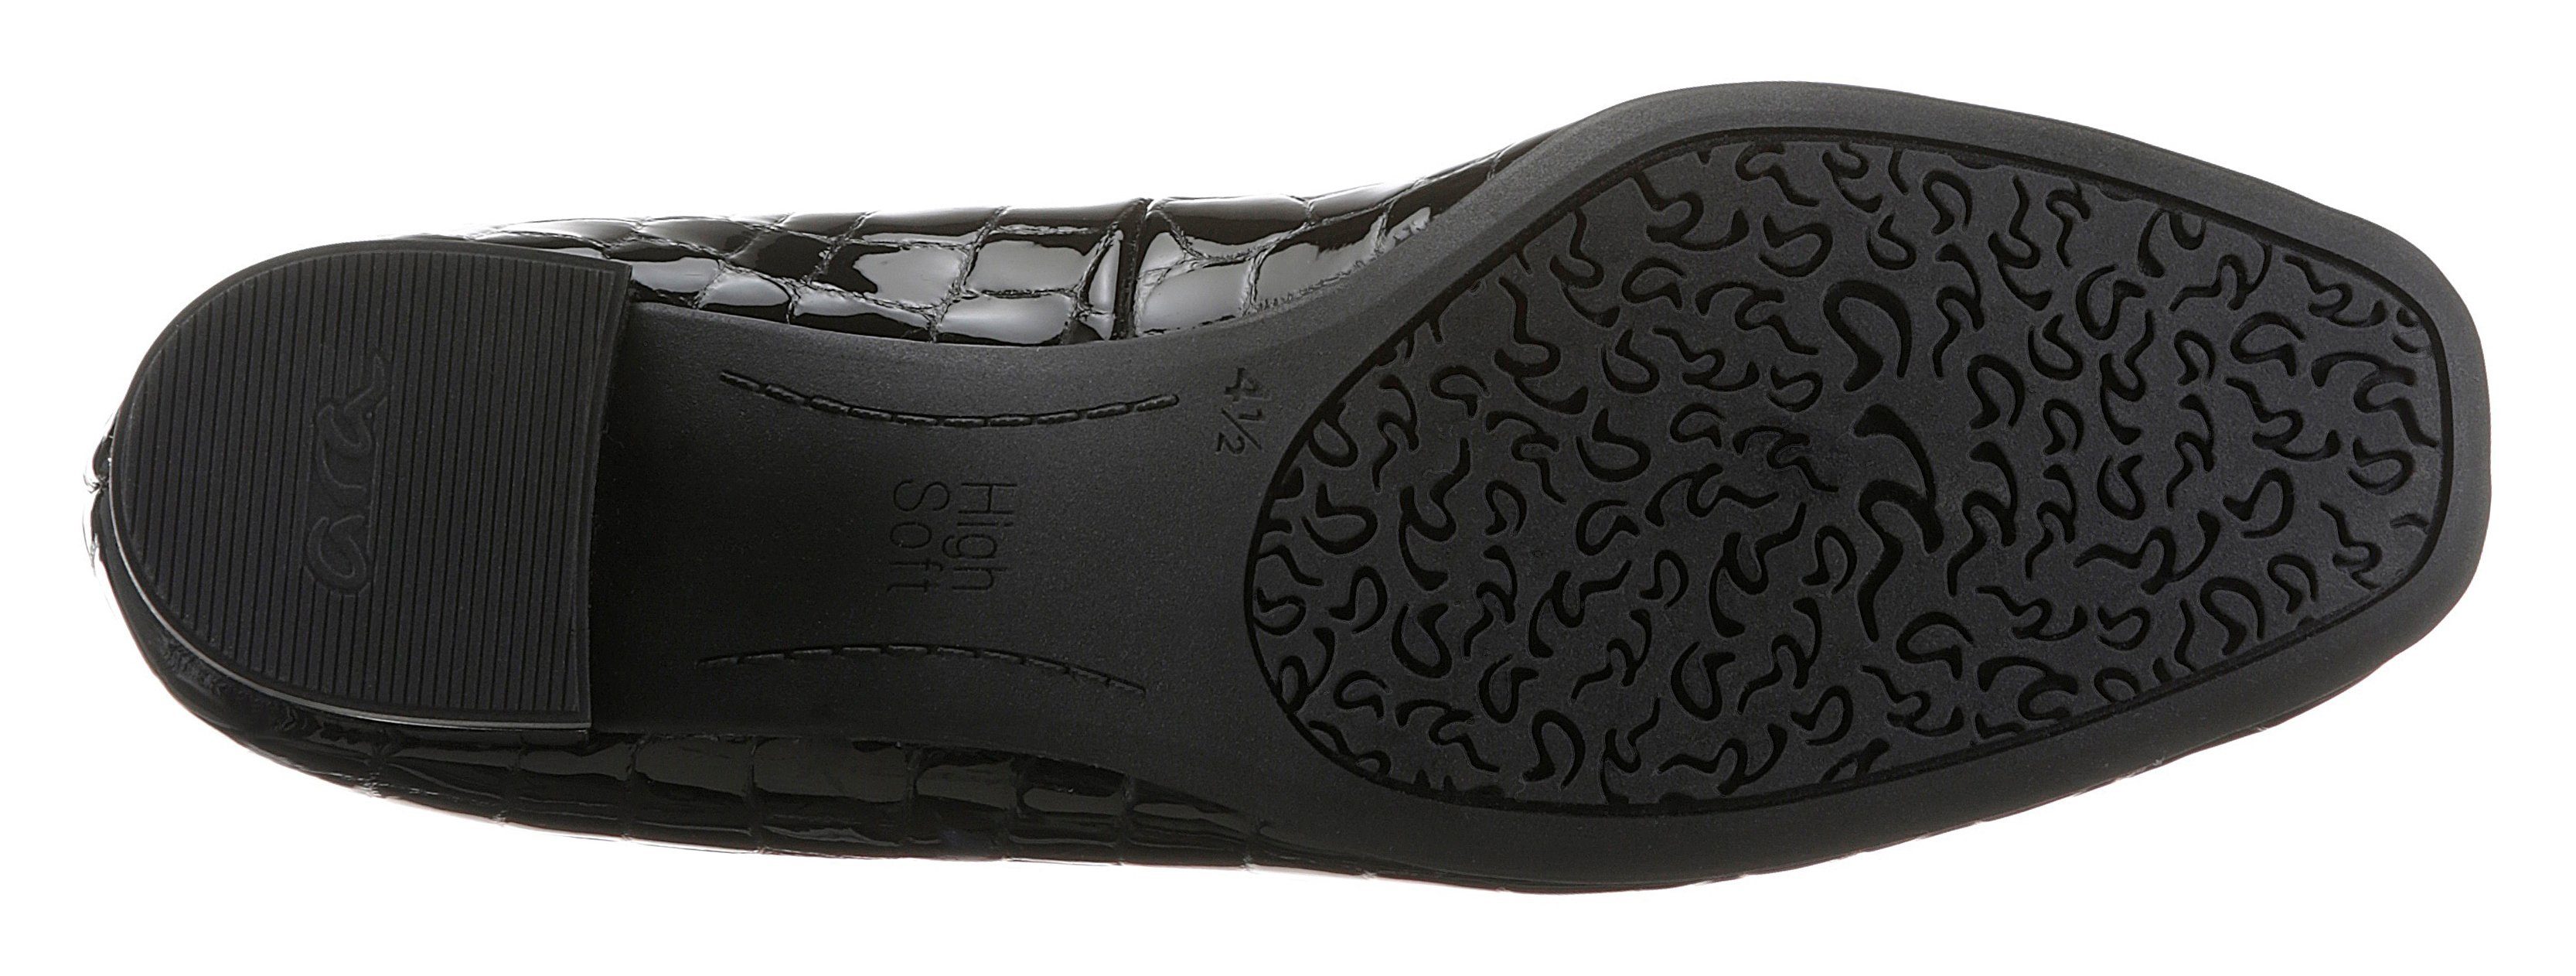 GRAZ Ara schwarz mit Reptilprägung, Pumps 038655 normal Schuhweite: